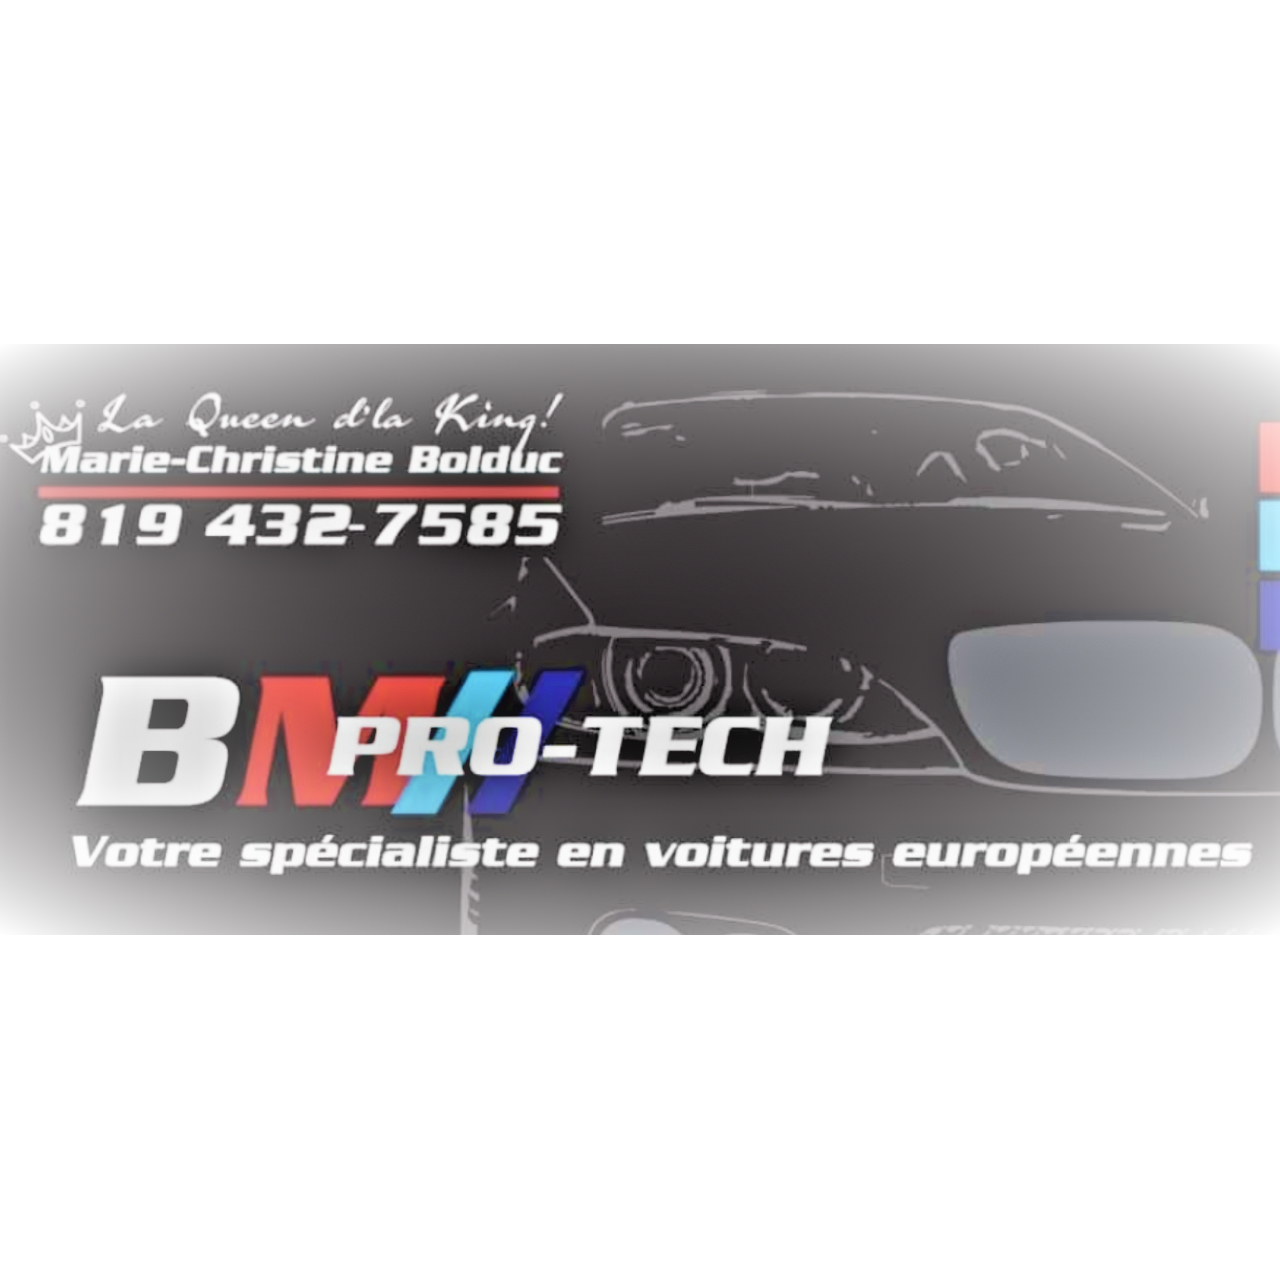 BM Pro-Tech - Garages de réparation d'auto